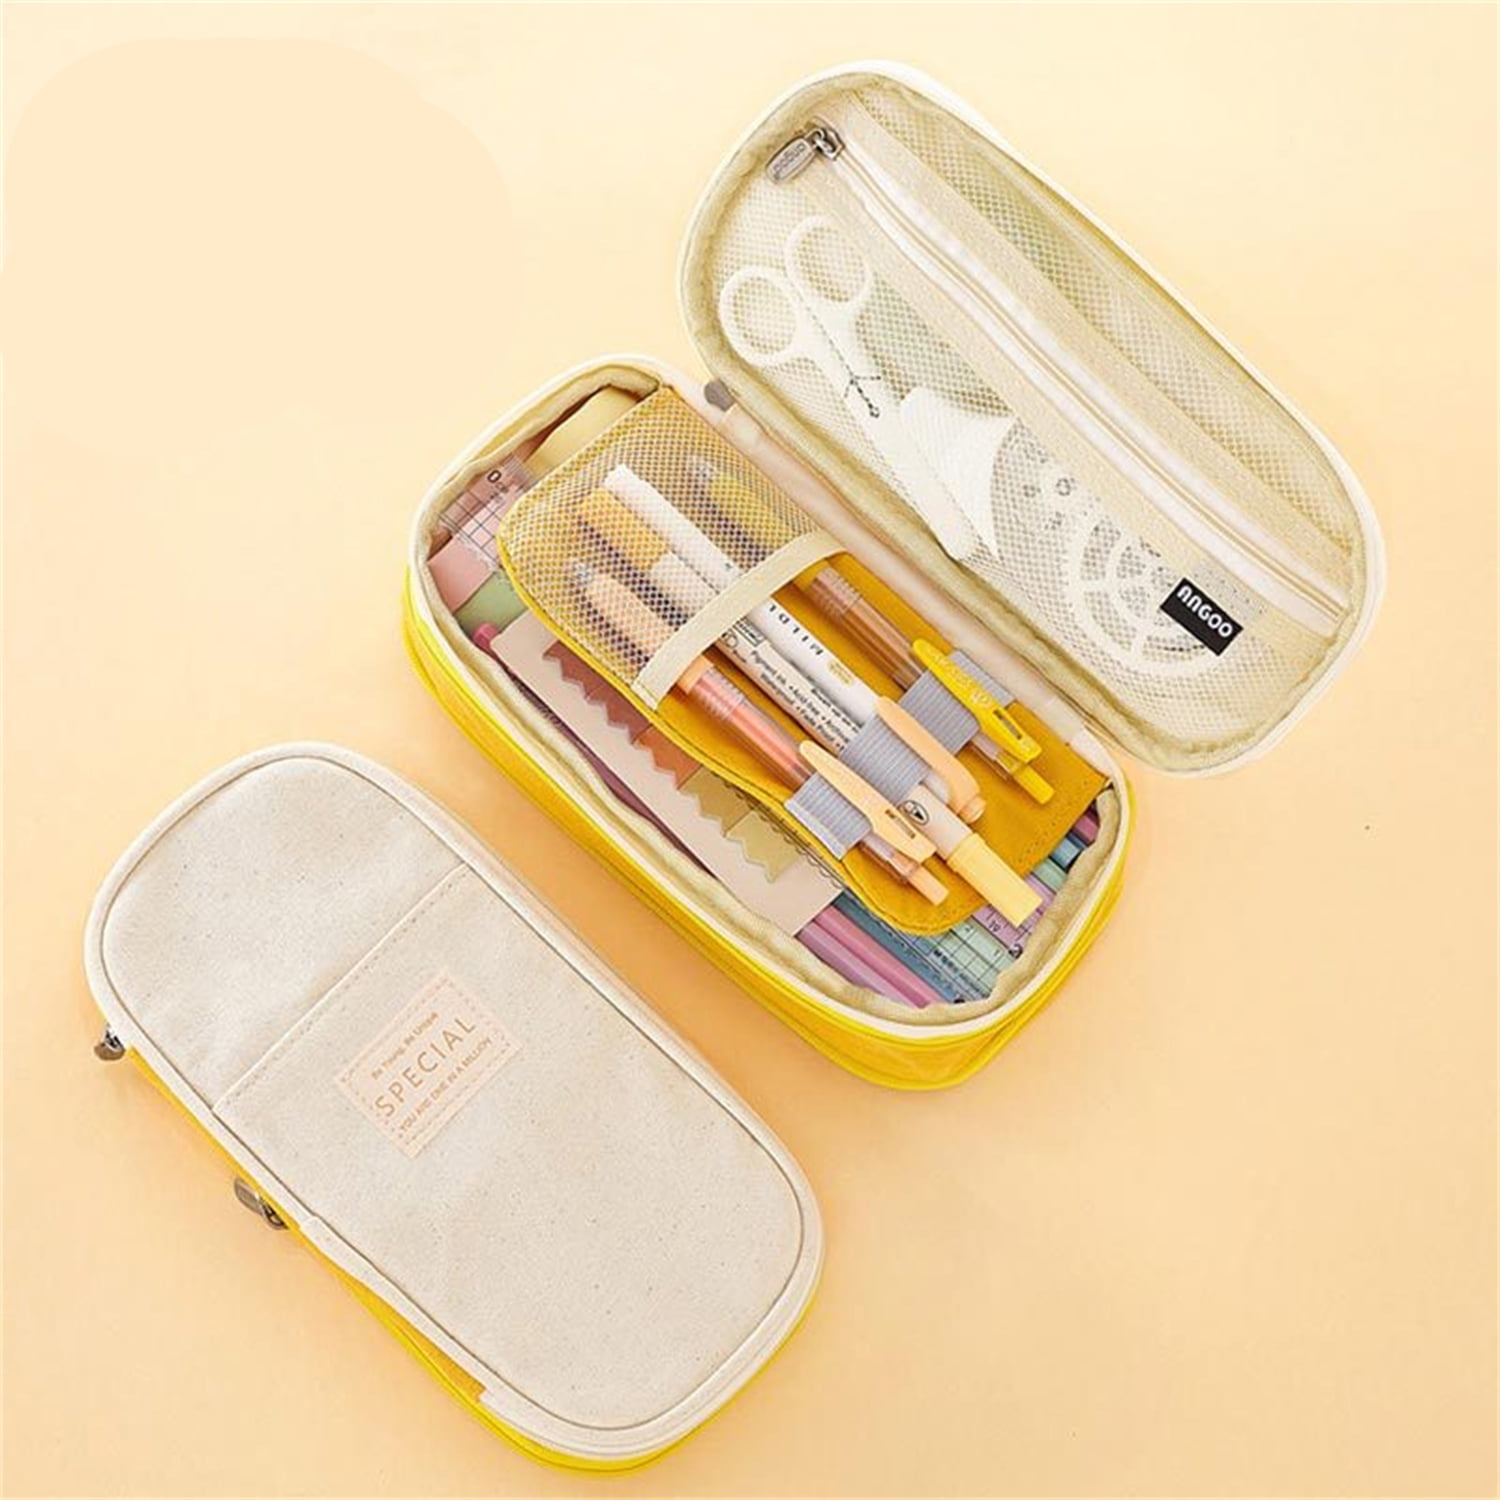 Korean Style Pencil Case – Pencil Box Factory